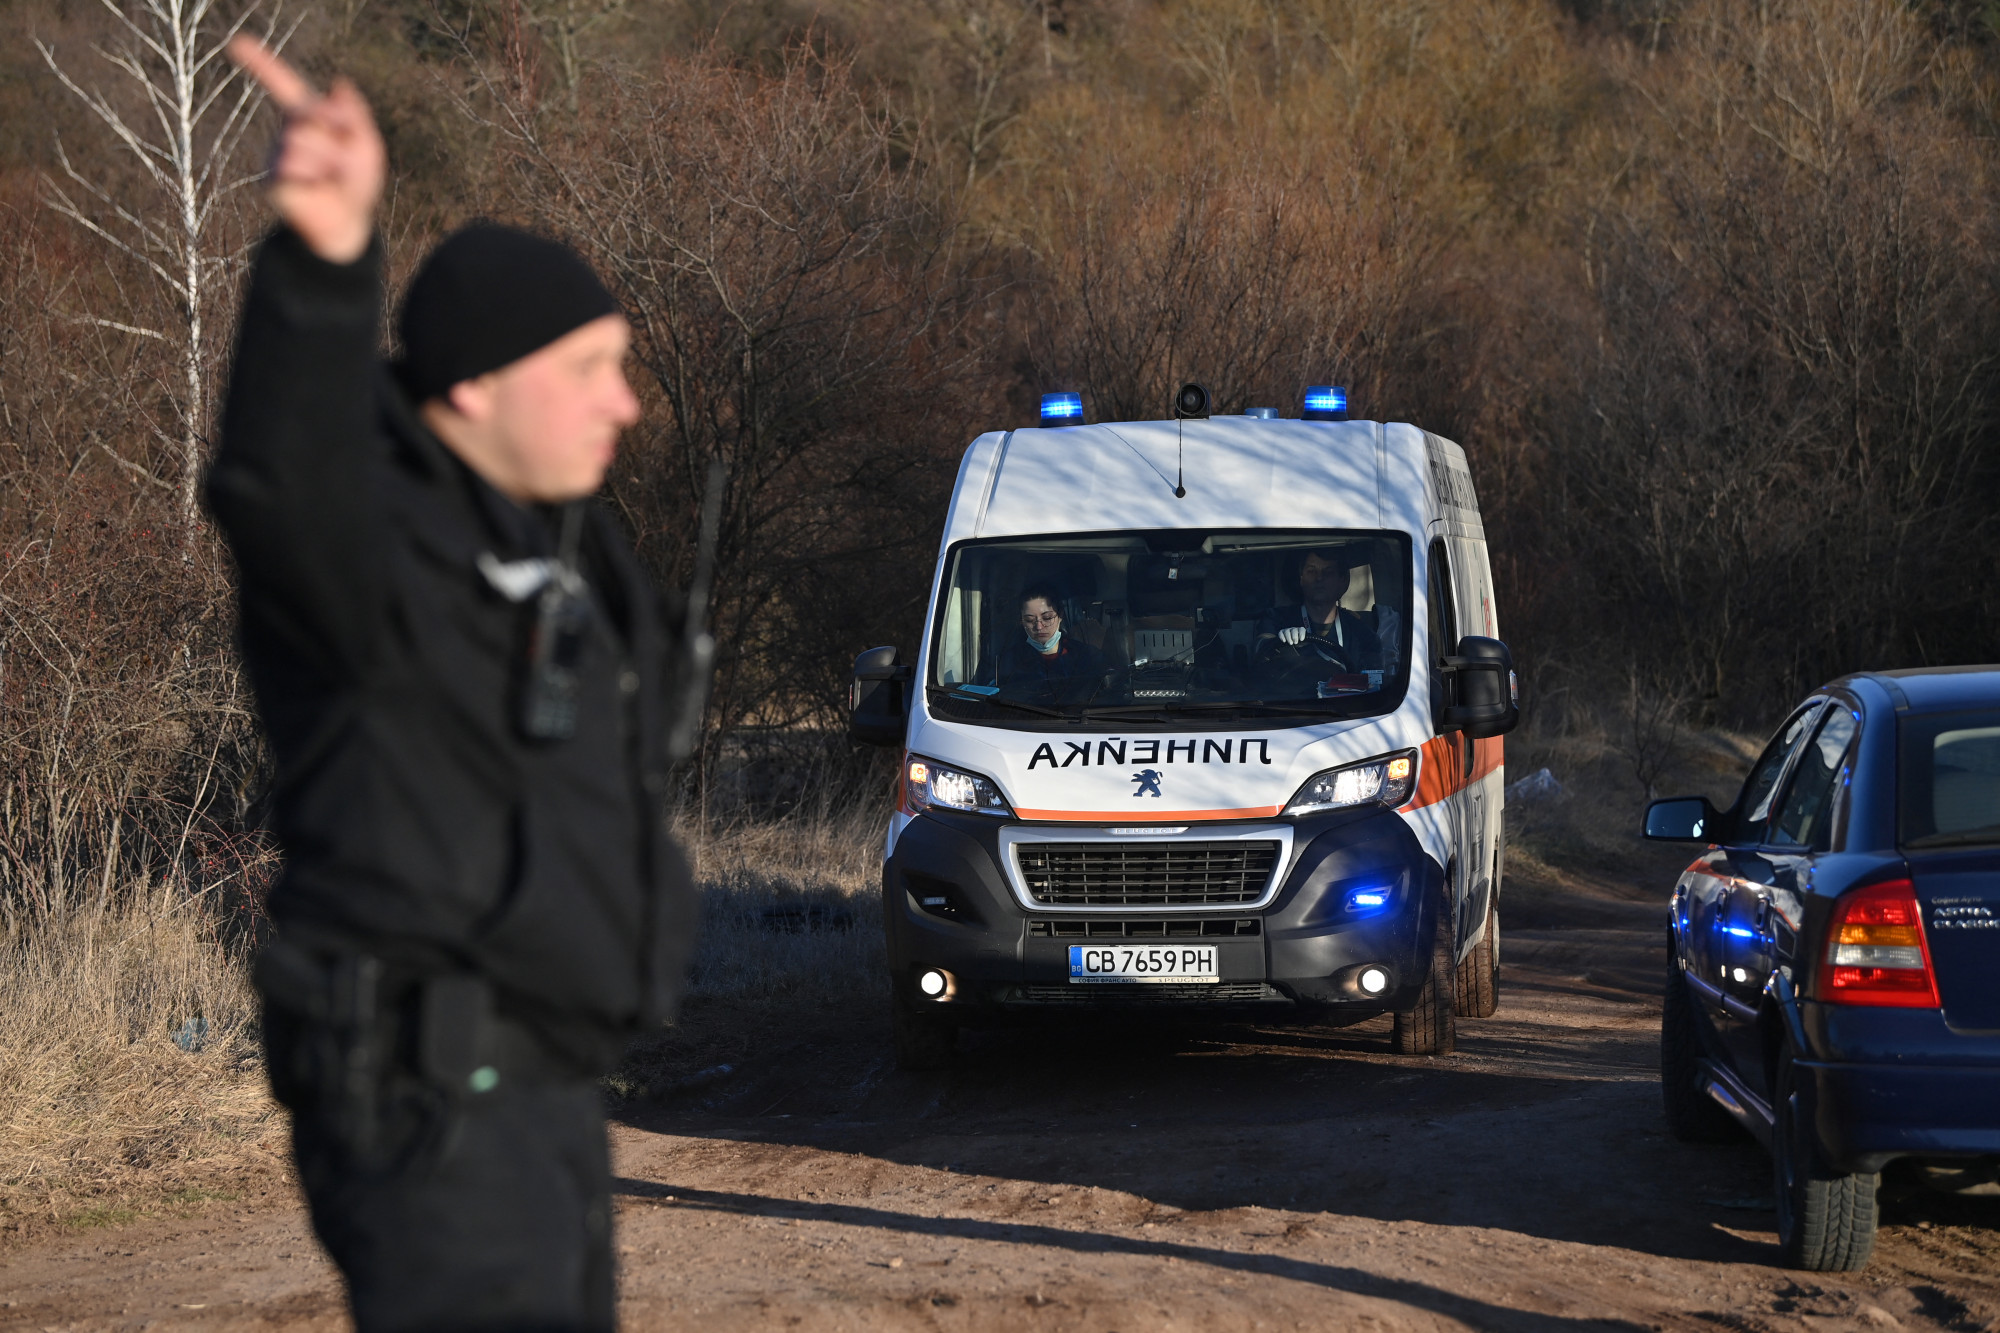 Legalább 18 embert találtak holtan egy teherautóban Bulgária fővárosa mellett